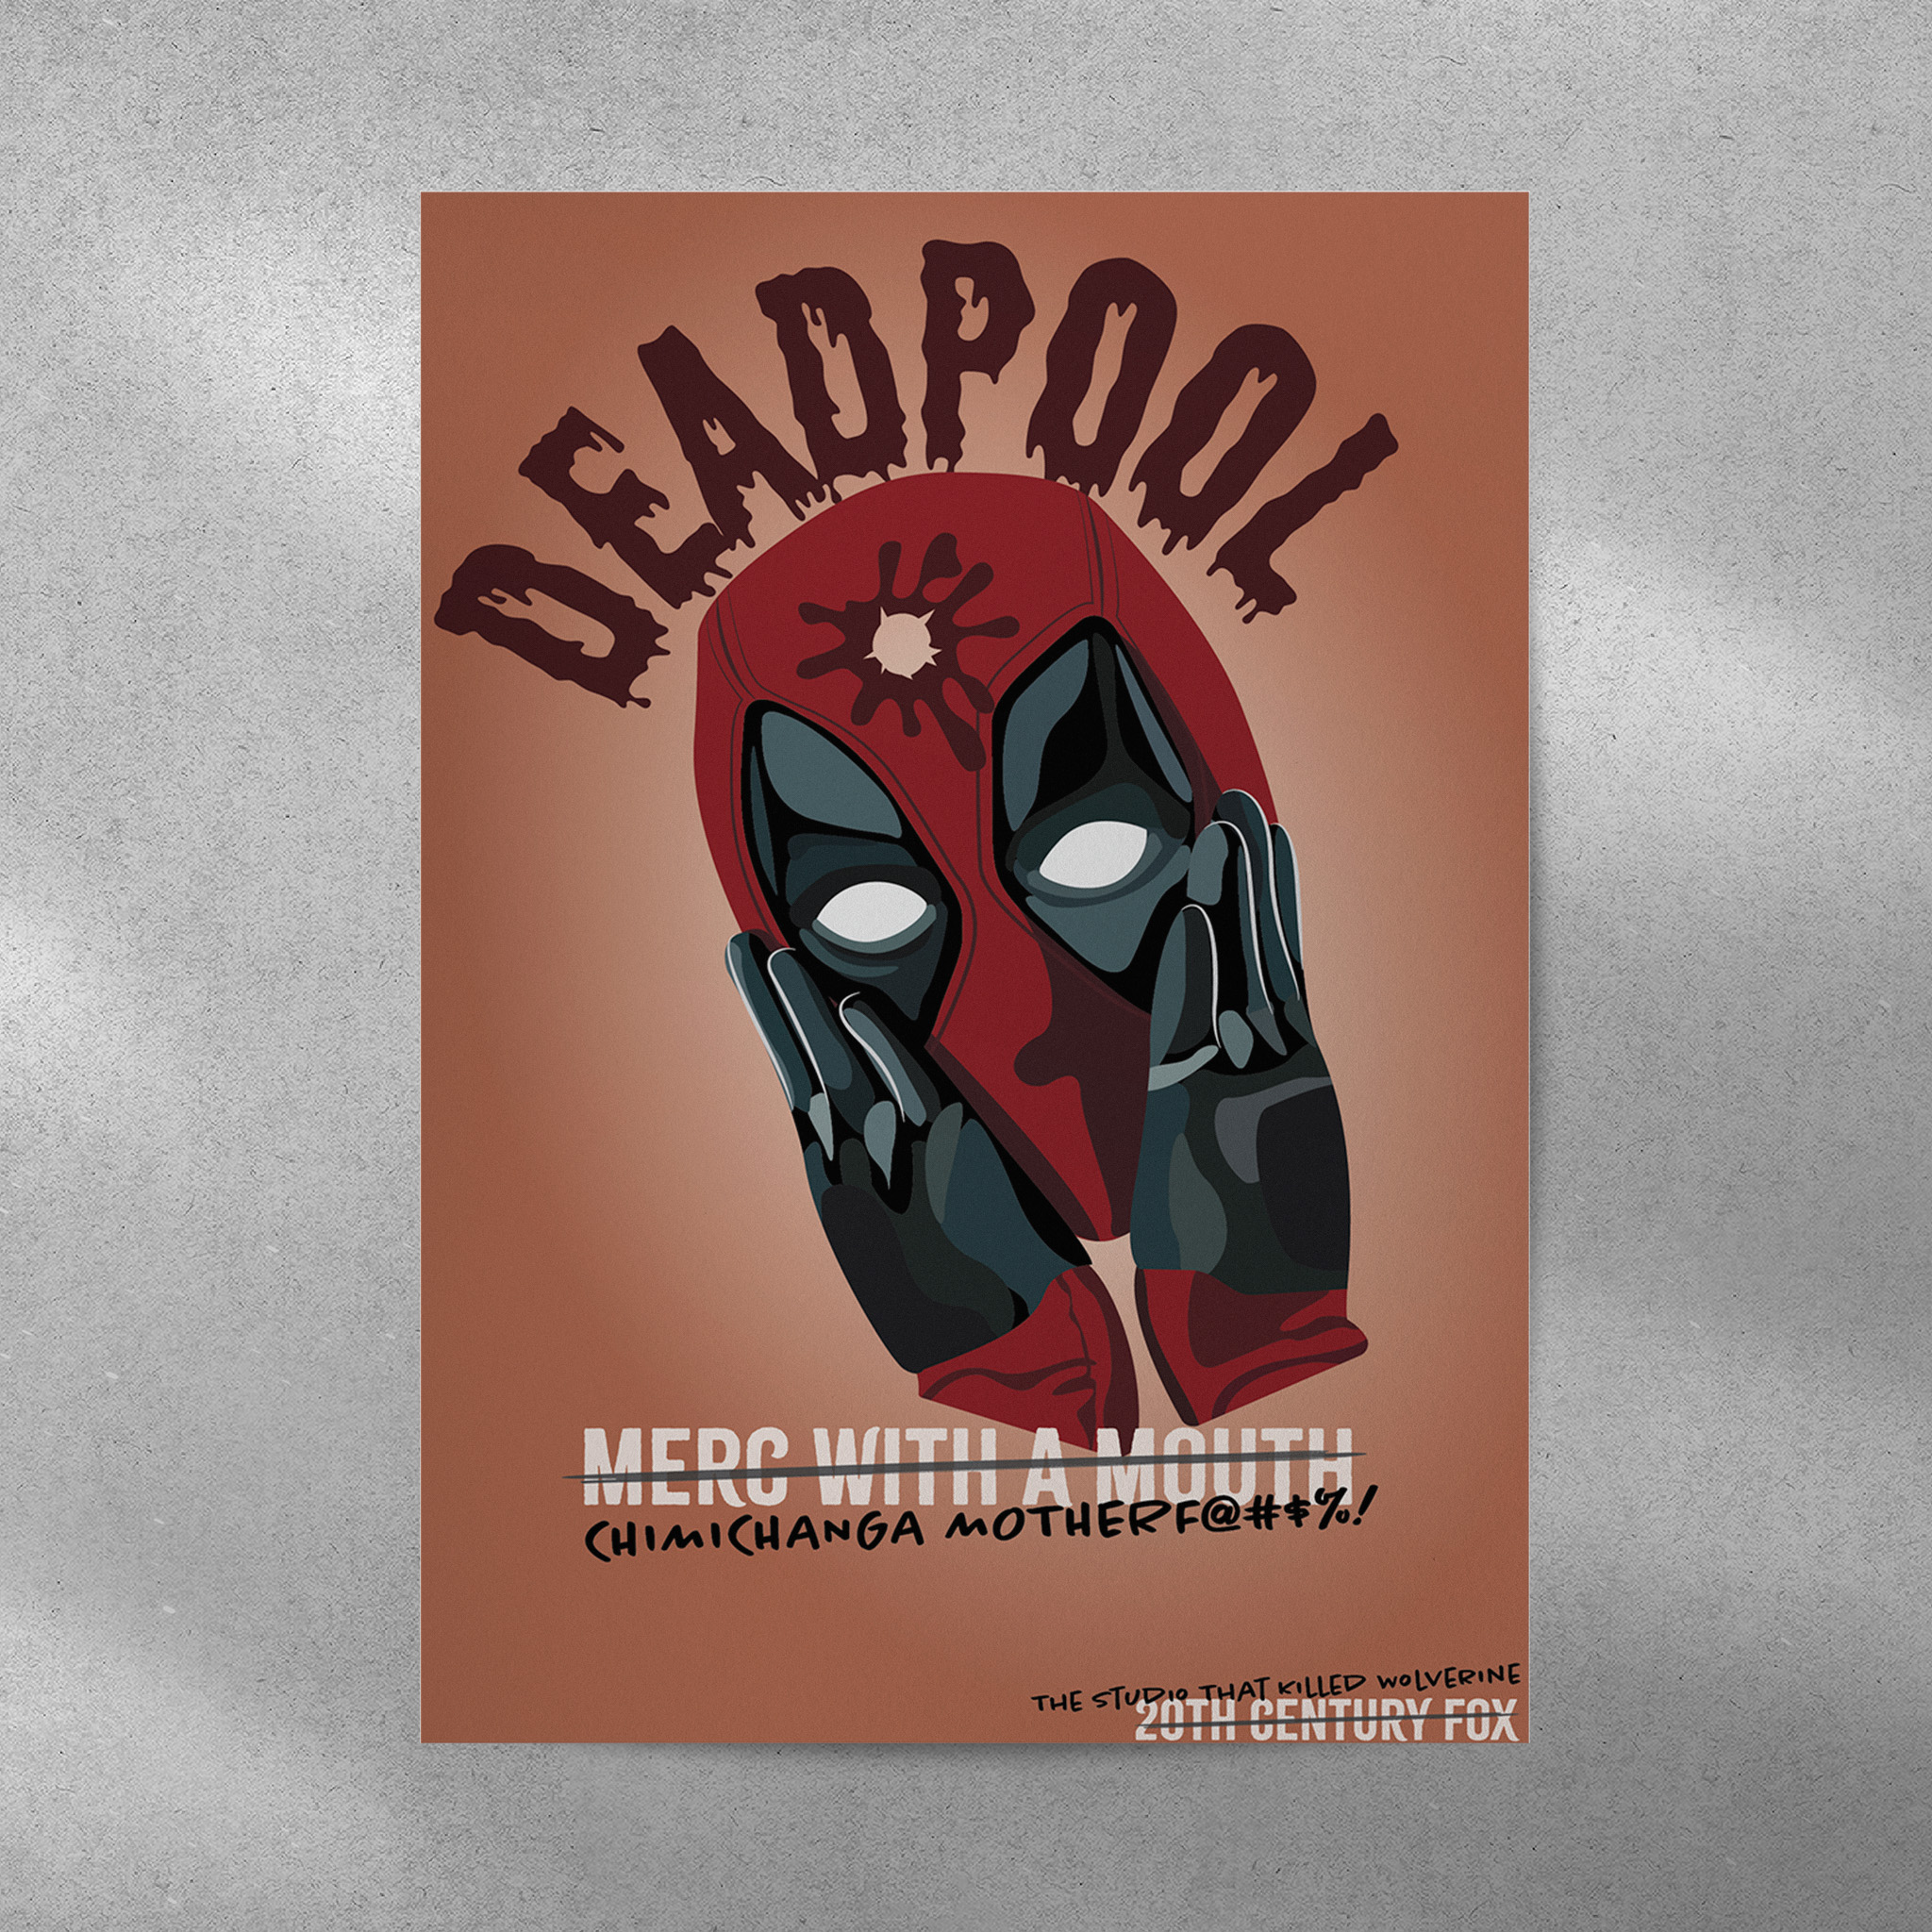 deadpool movie poster mockup